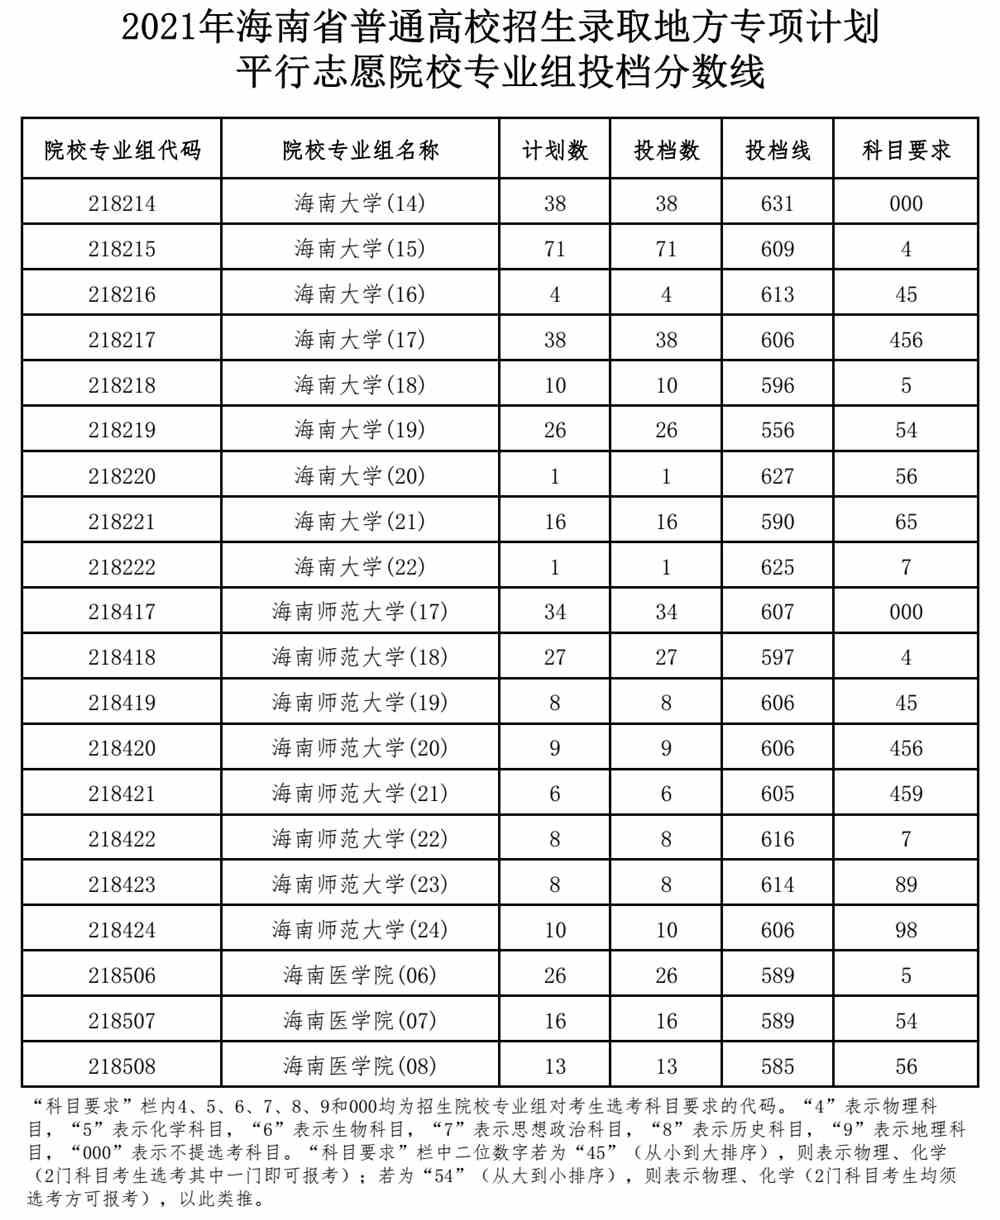 2021年海南省普通高校招生录取地方专项计划平行志愿院校专业组投档分数线